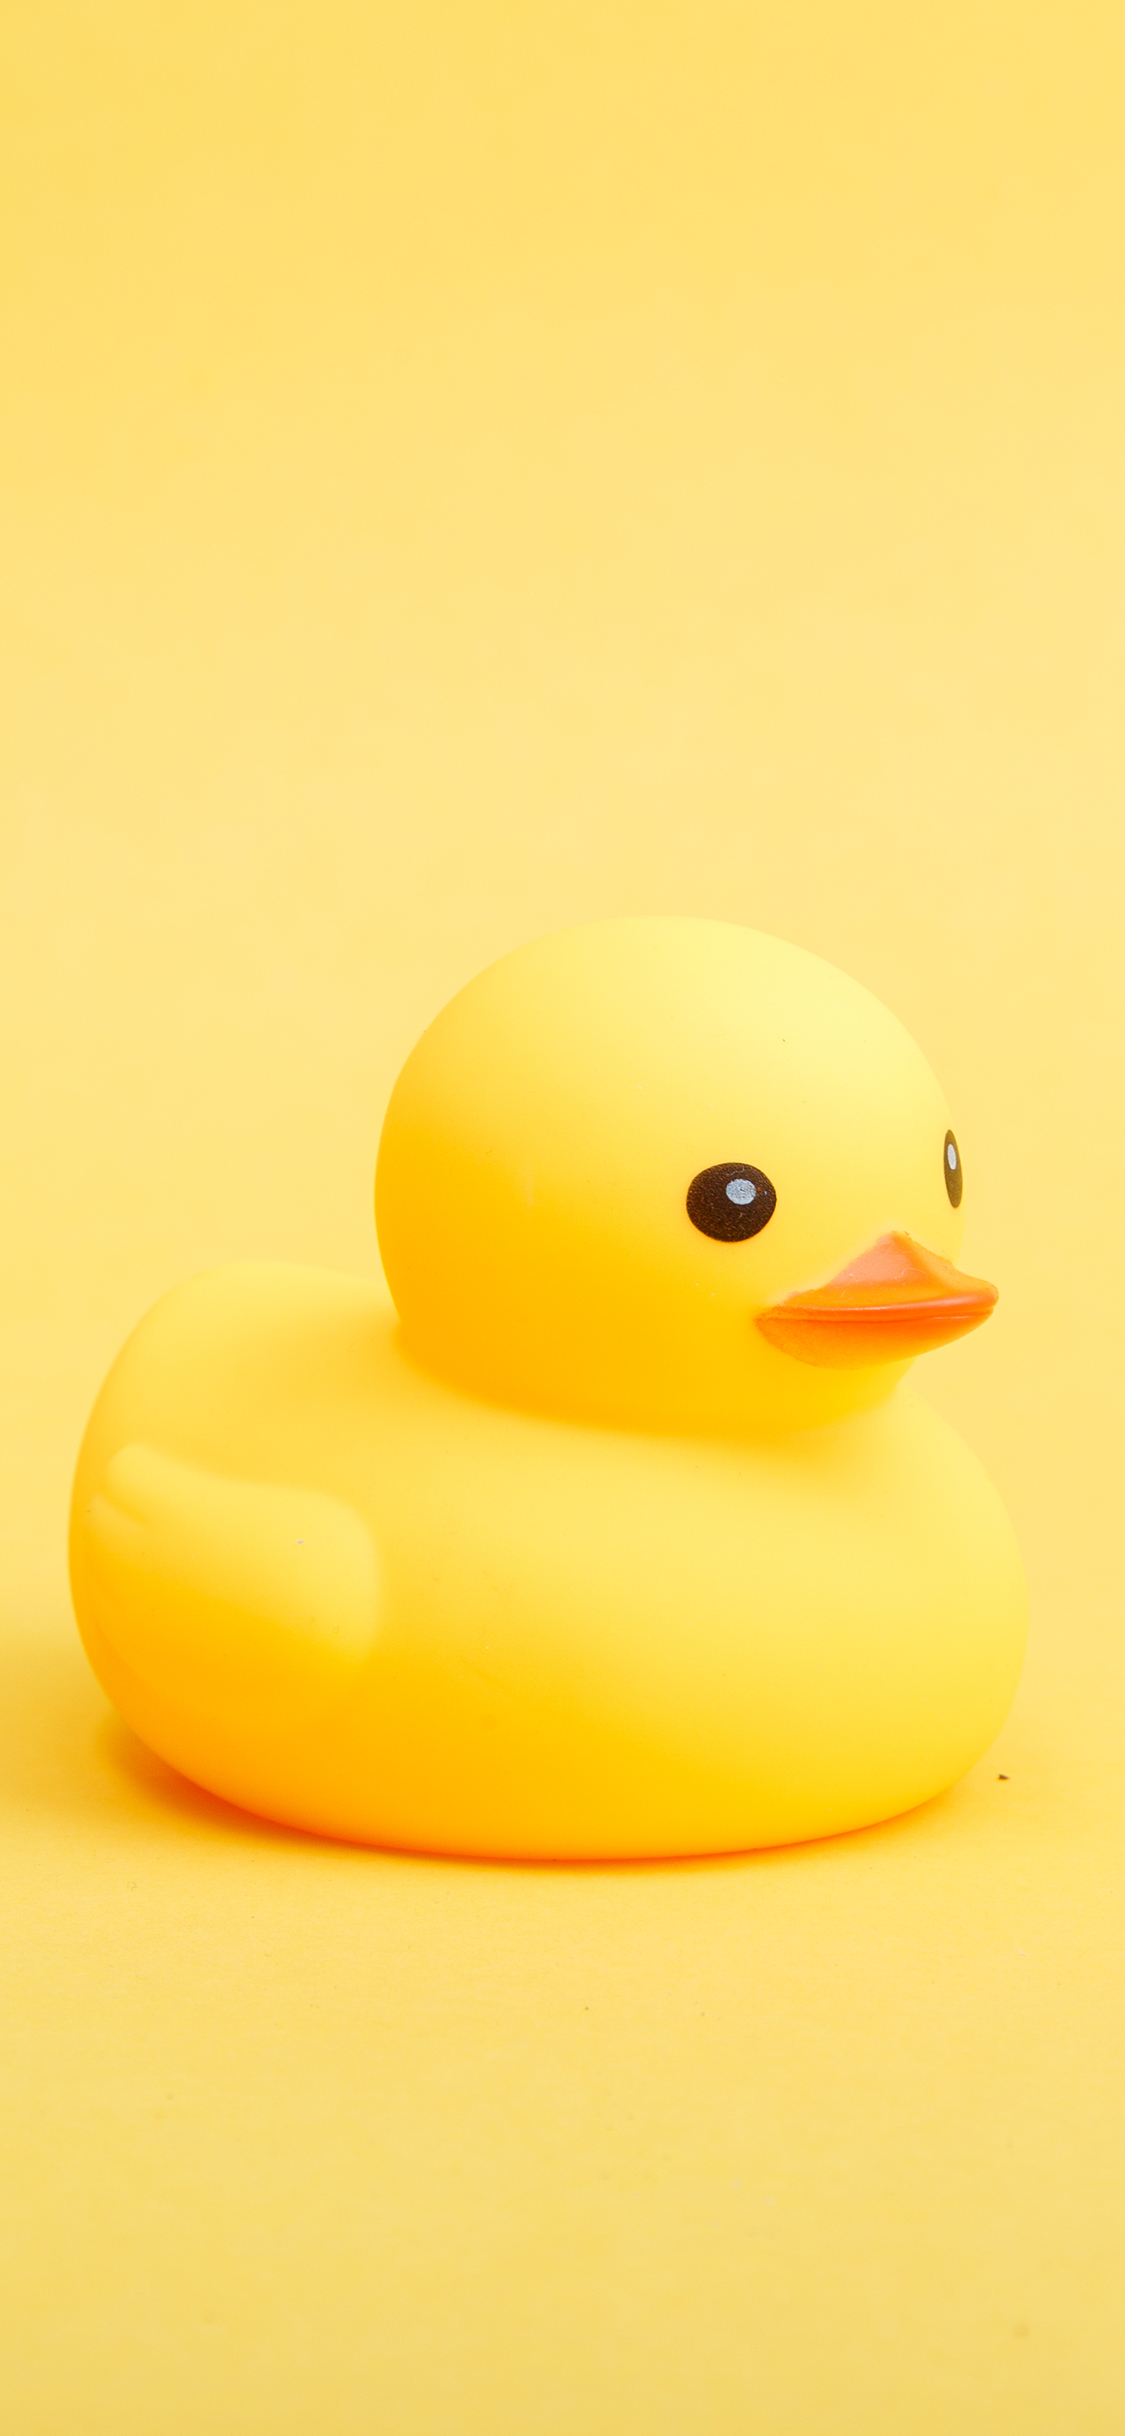 小黄鸭 橡胶鸭 玩具 黄色 可爱 苹果手机高清壁纸 1125x2436